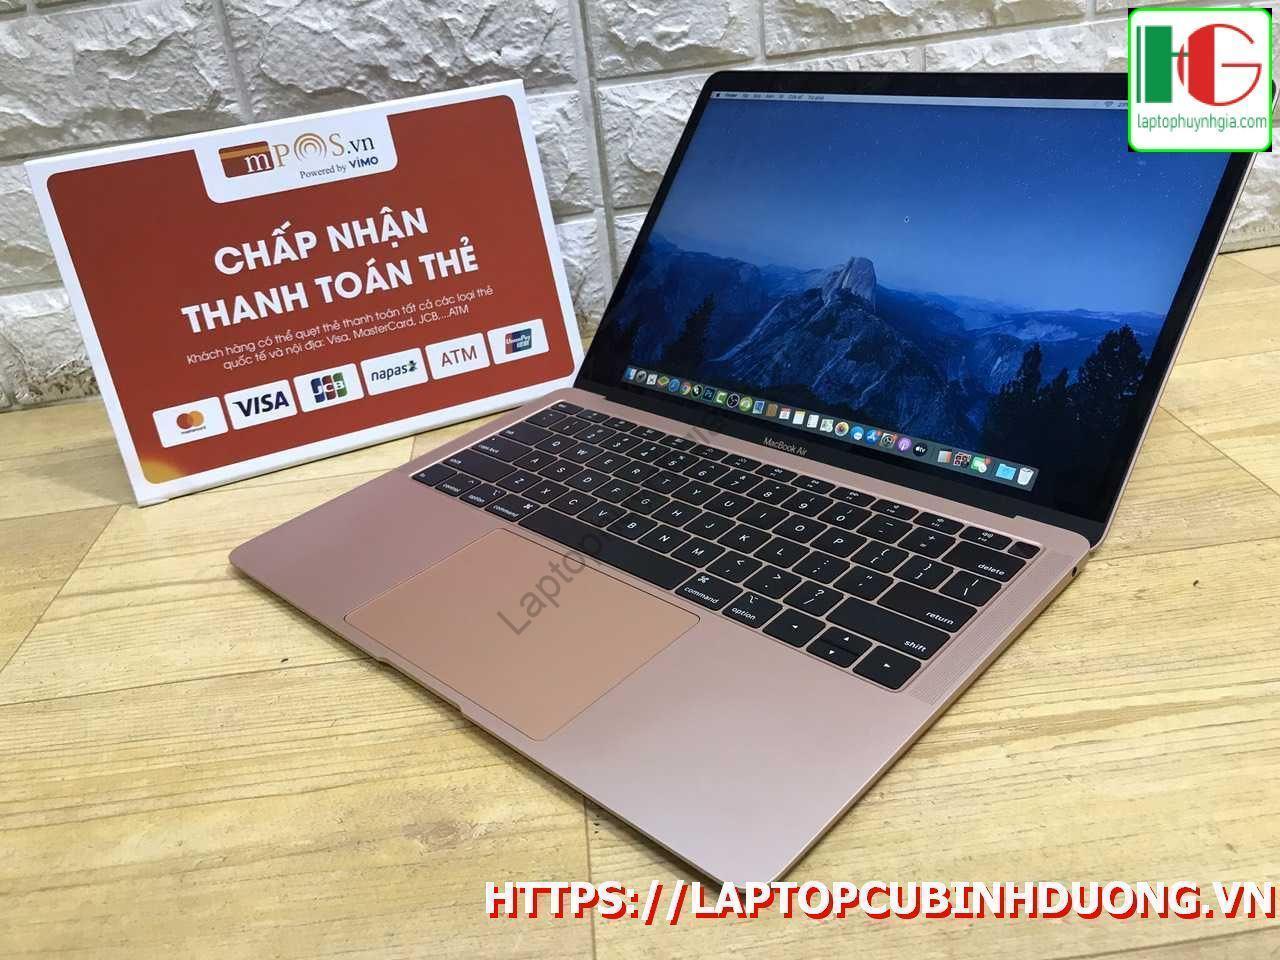 Macbook Air 2018 I5 8g Ssd 128g Laptopcubinhduong.vn 2